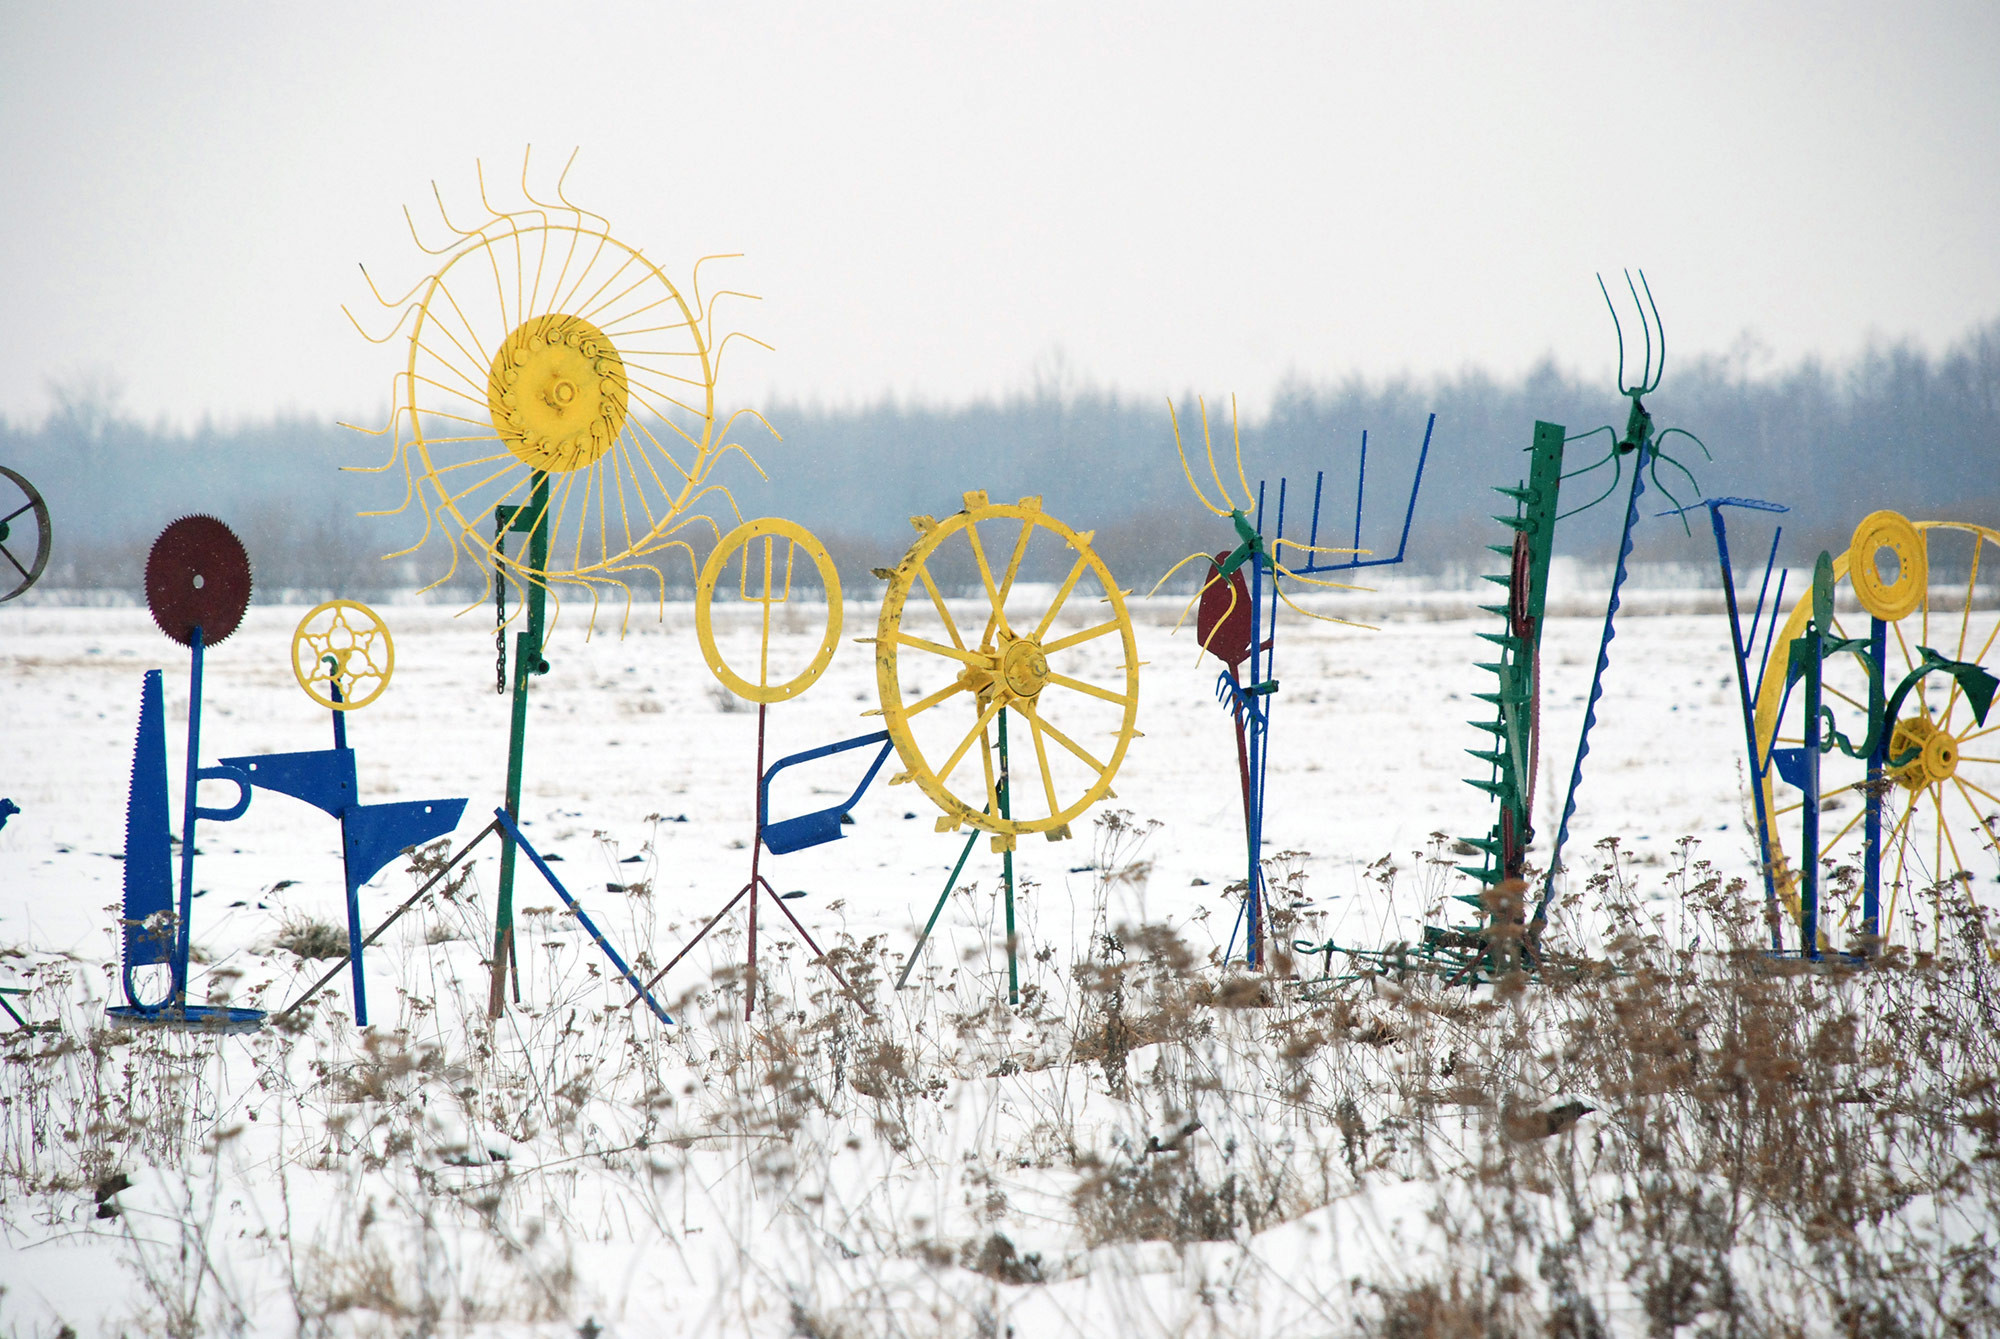 Daniel Rycharski, Ogród zimowy, rzeźba, 2013. Zdjęcie wykonane we wsi Kurówko, fot. Daniel Chrobak (źródło: materiały prasowe organizatora)